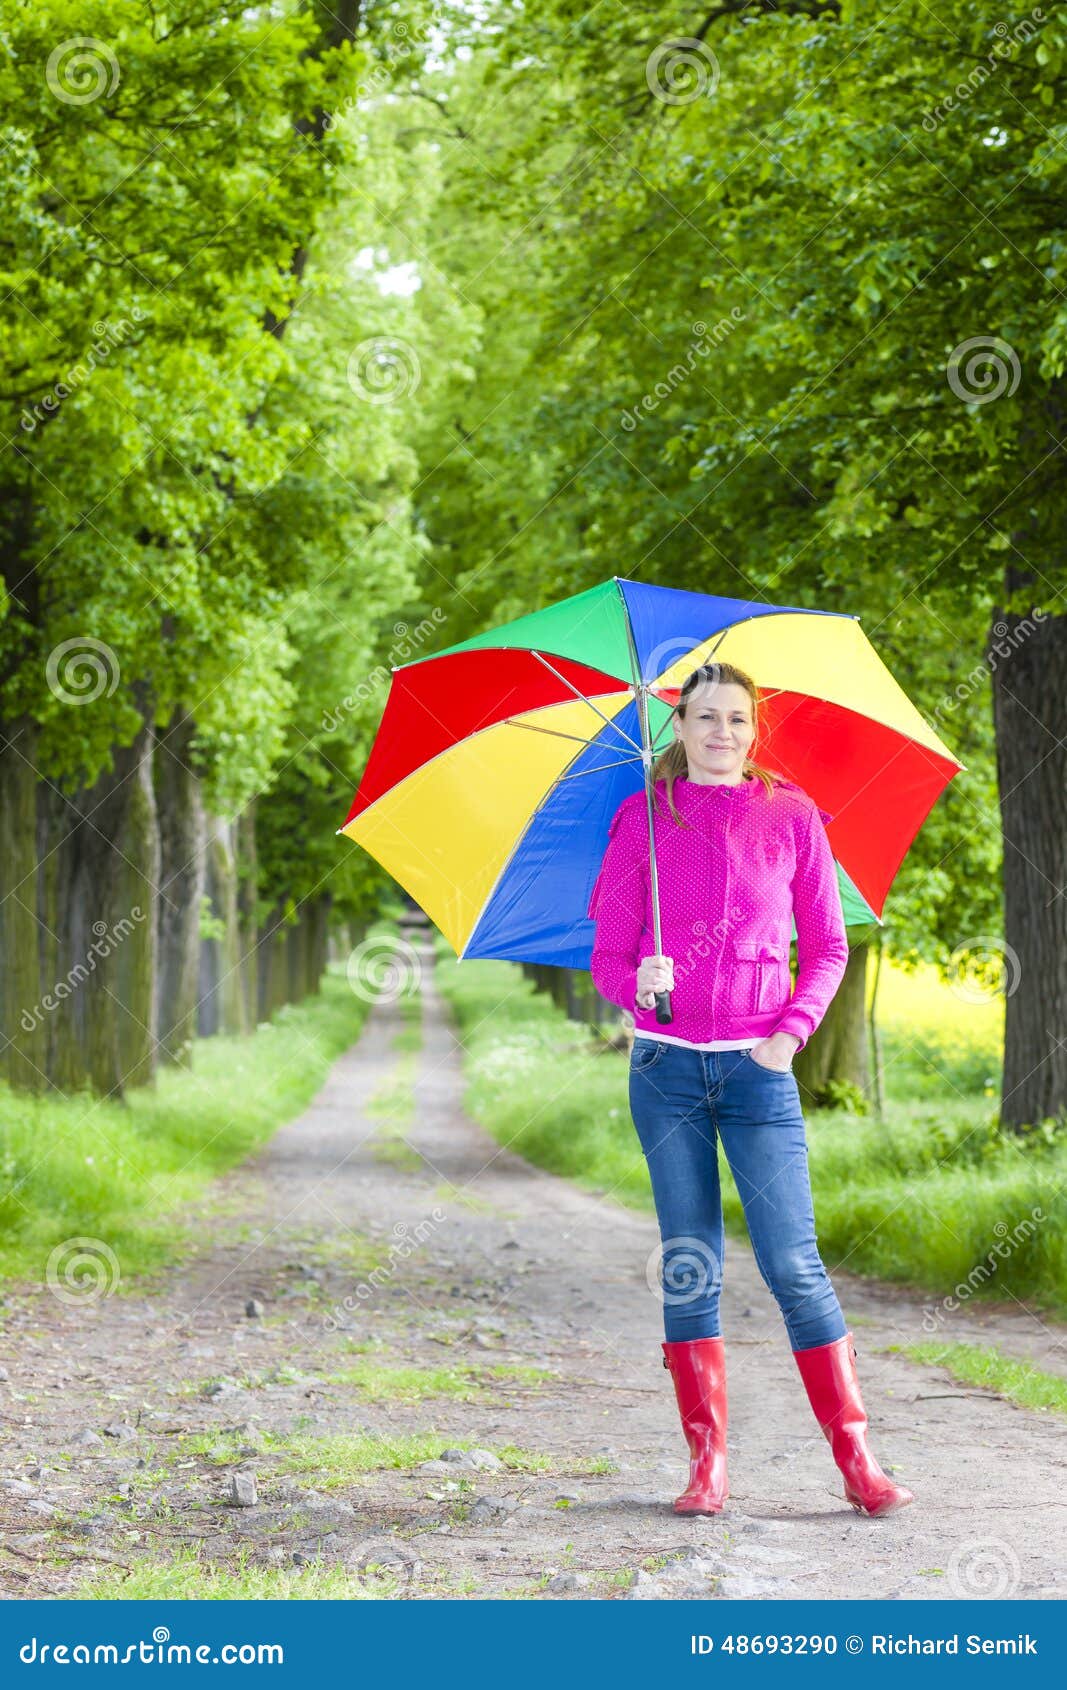 Stivali di gomma d'uso della donna con l'ombrello. Woman wearing rubber boots with umbrella in spring alley